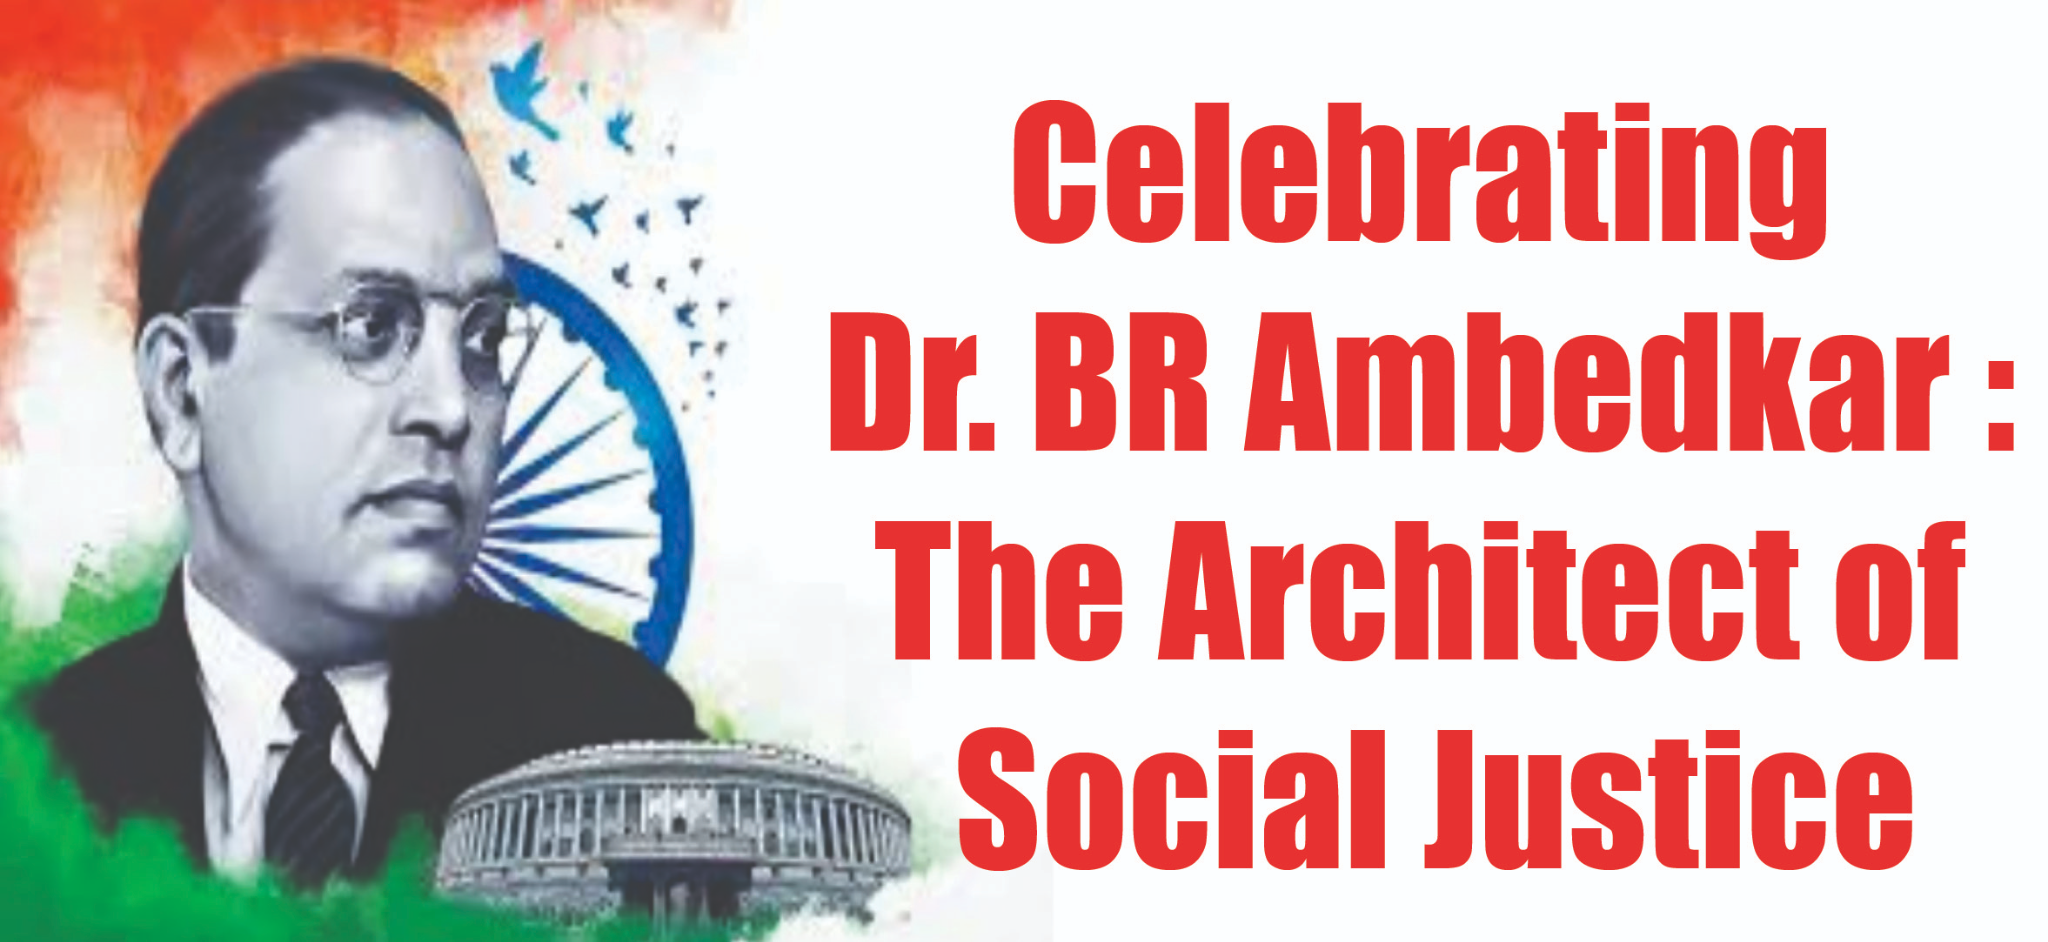 Blog on Celebrating Dr. BR Ambedkar: Architect of Social Justice